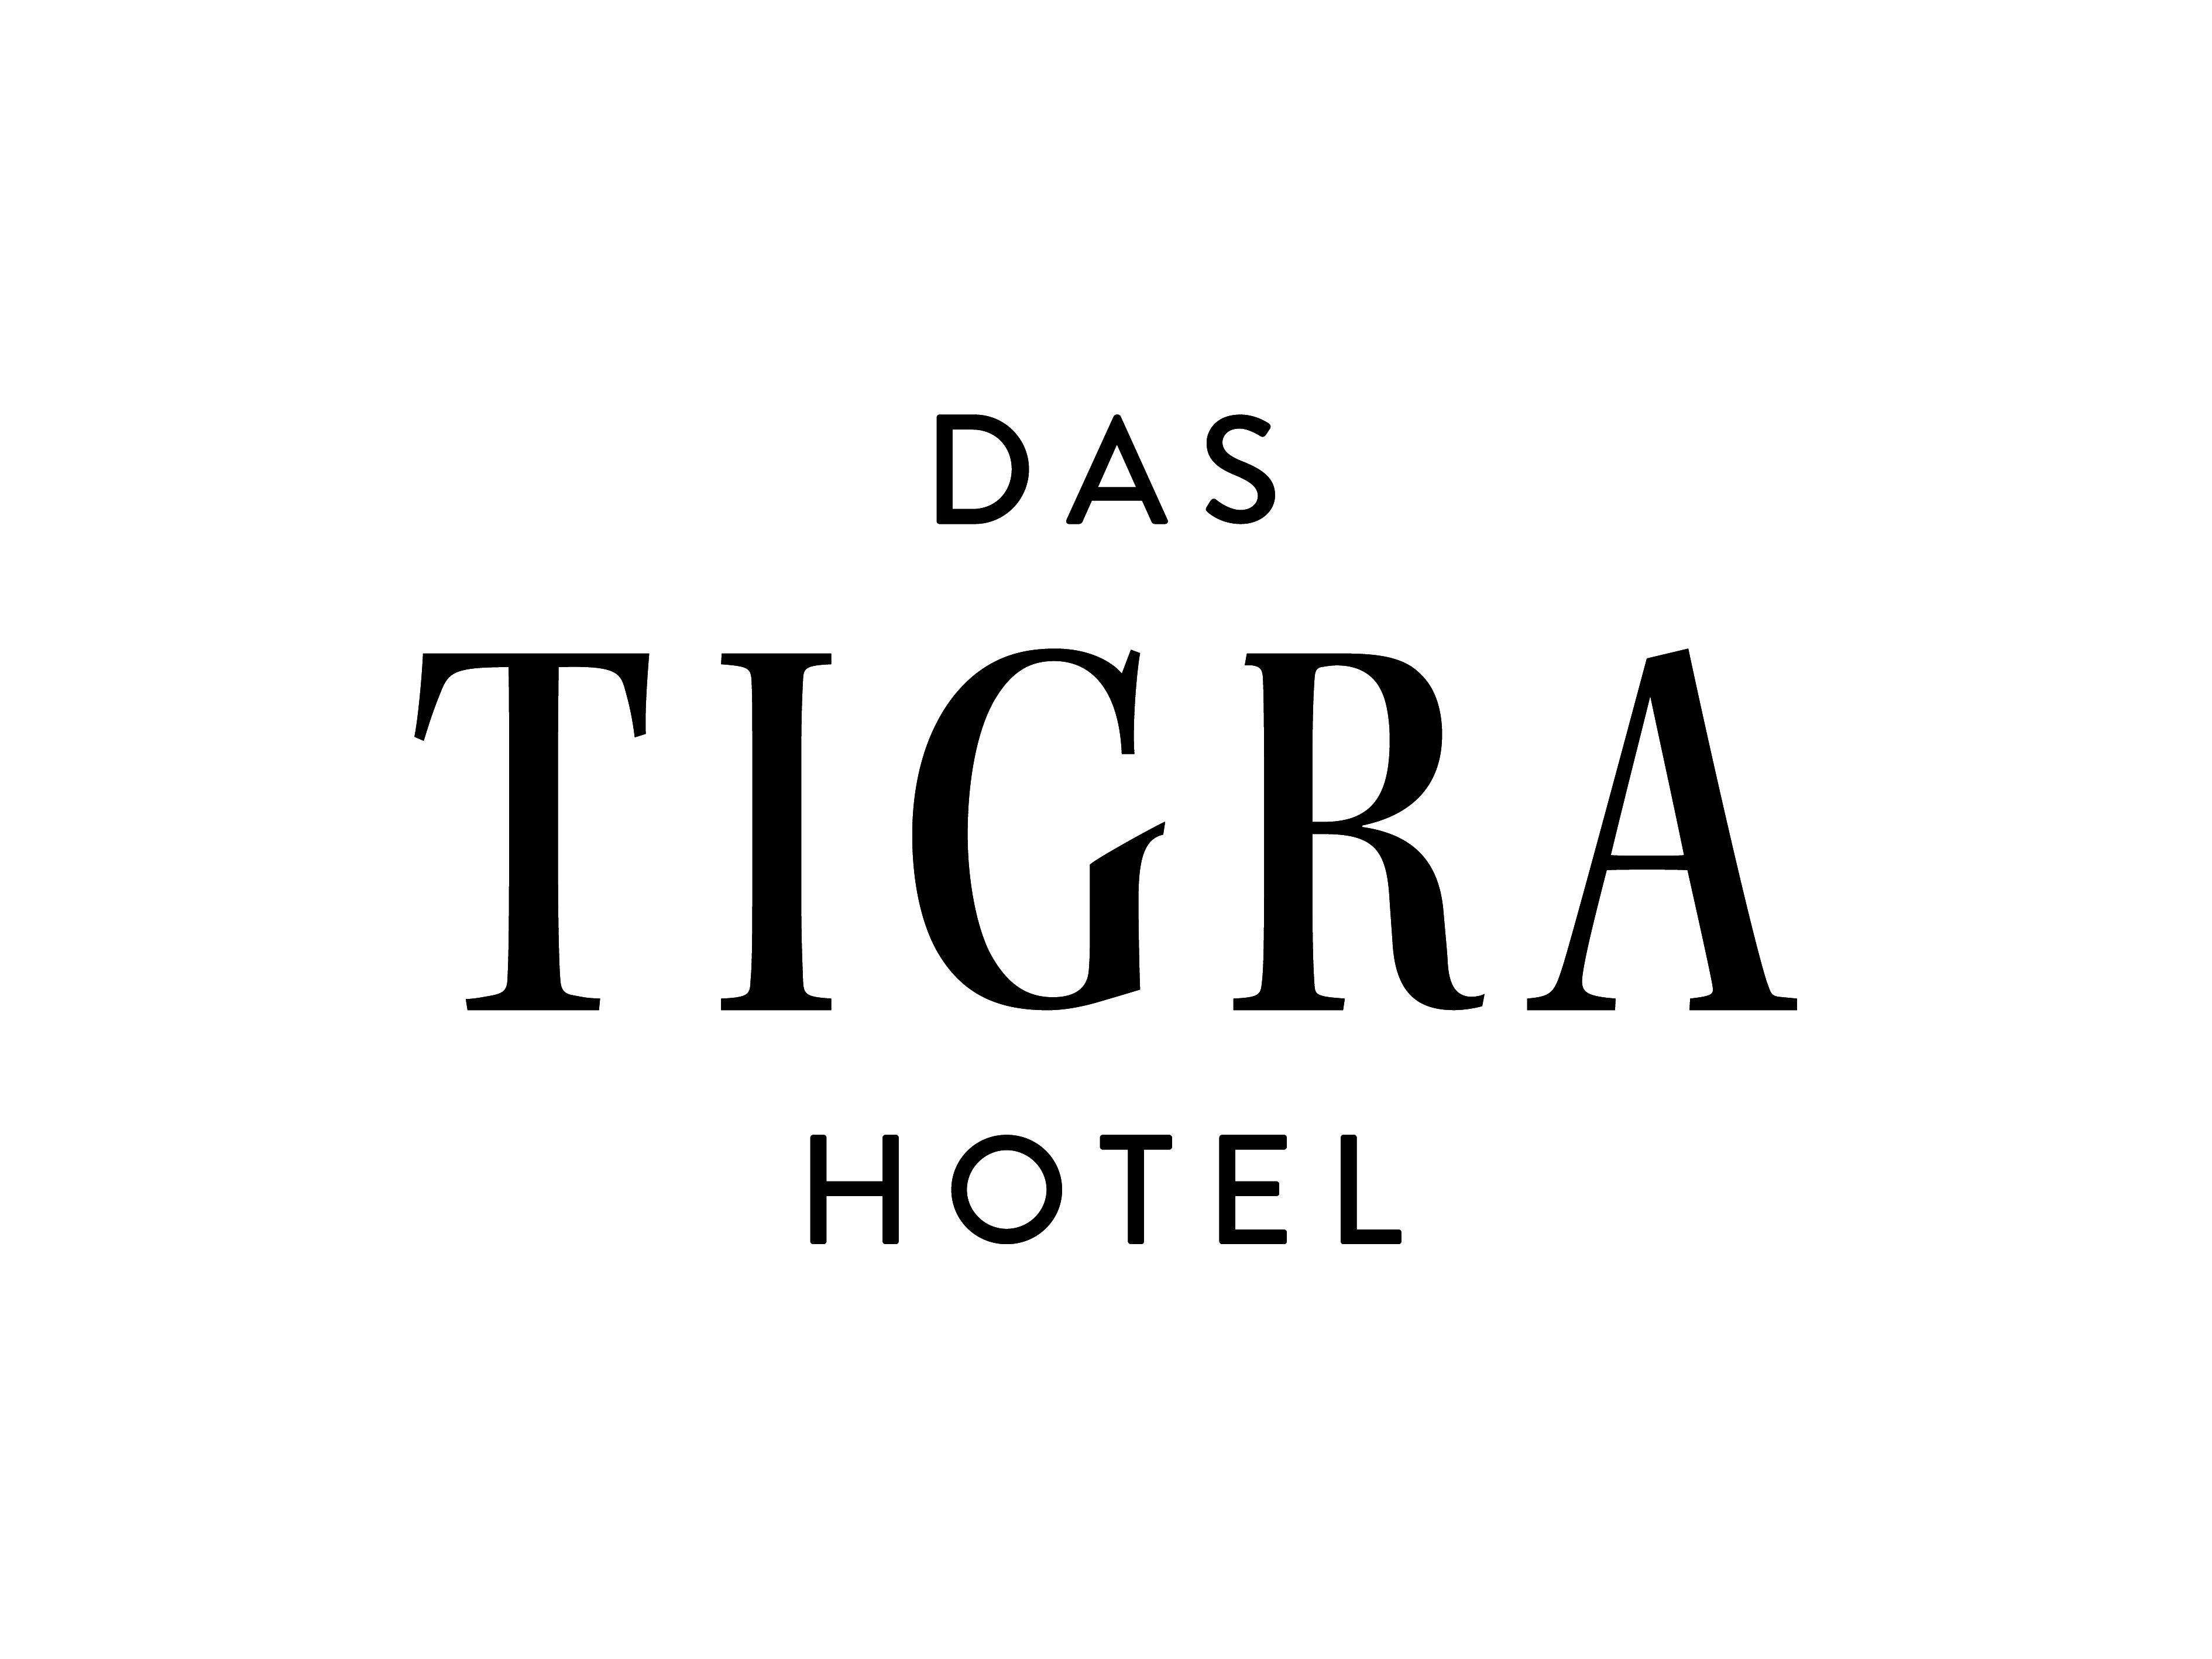 Tigra Logo - Hotel Das Tigra